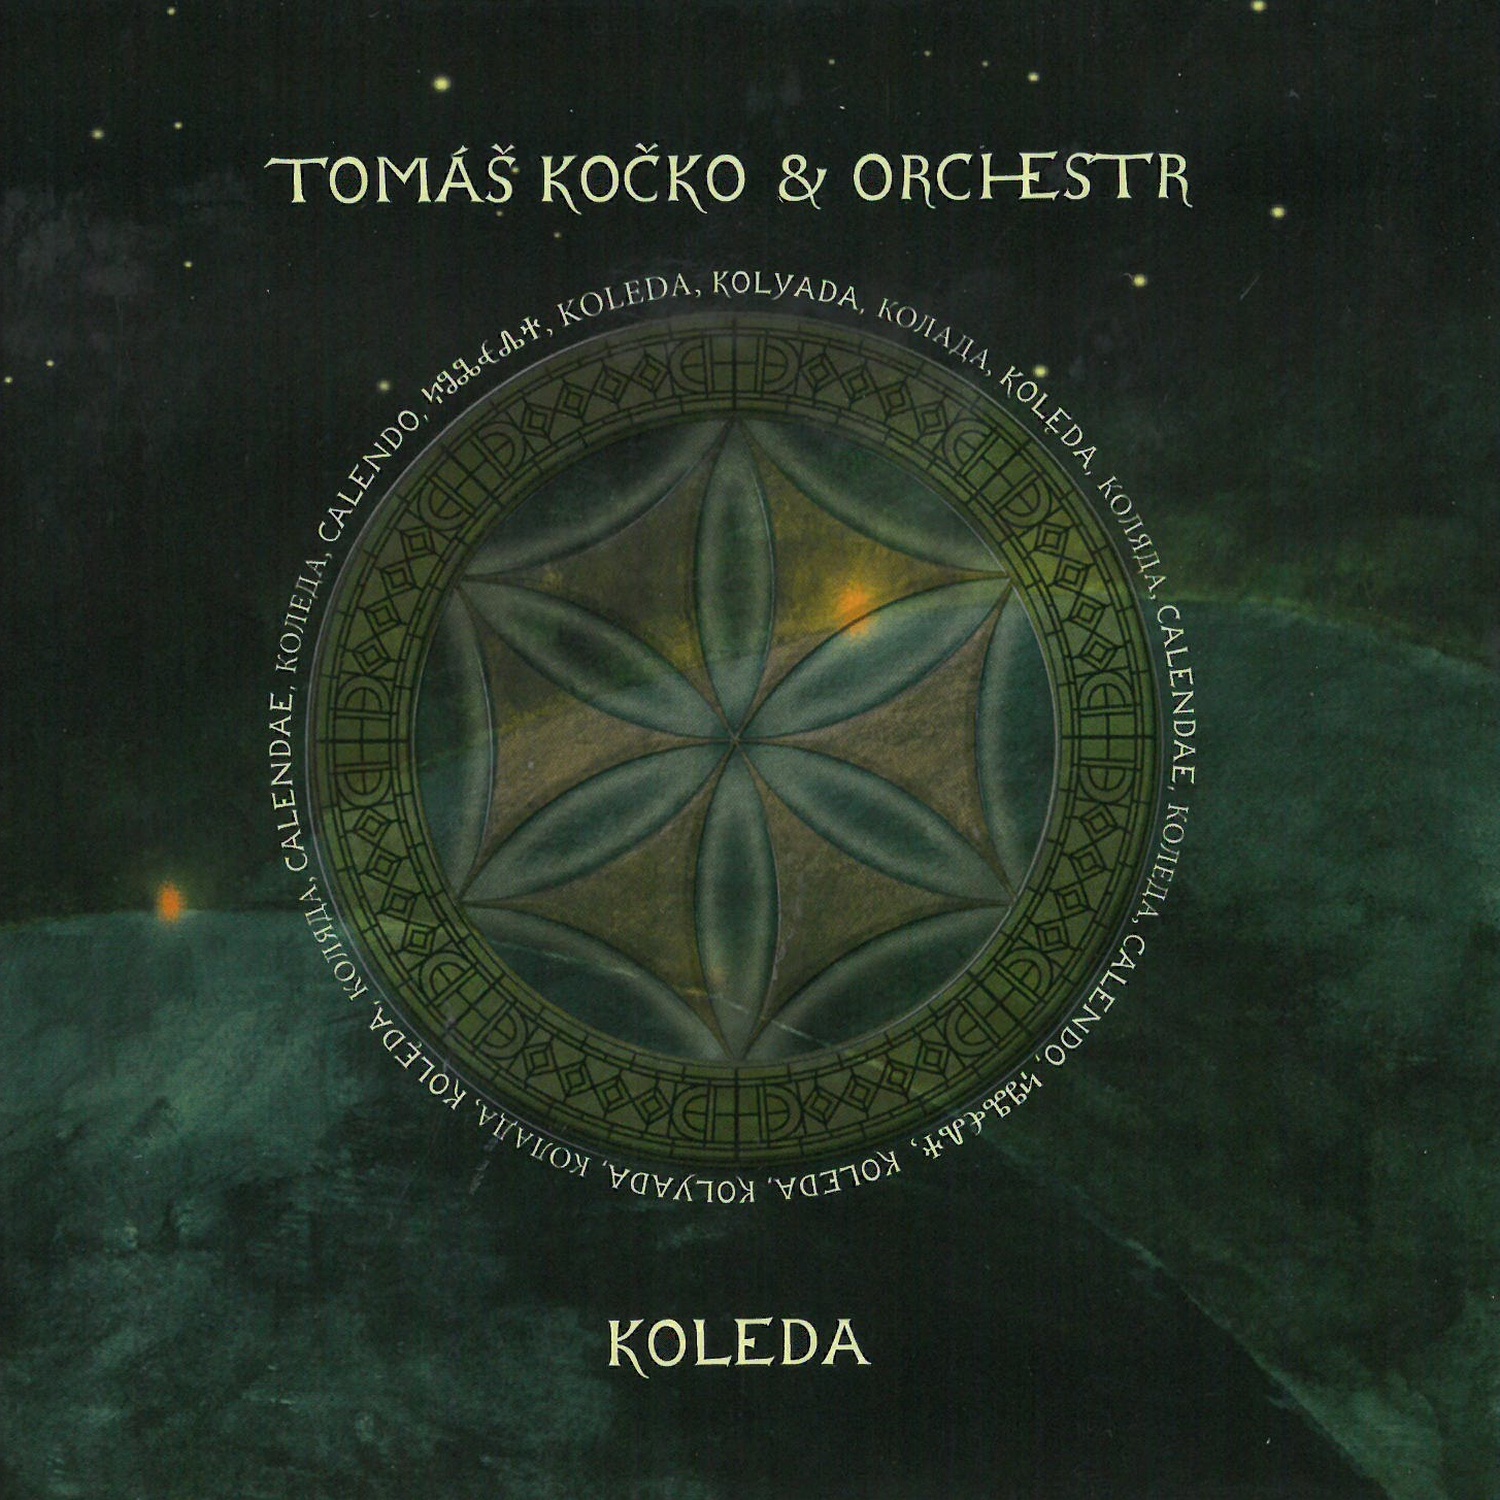 CD Shop - KOCKO, THOMAS & ORCHESTRA KOLEDA